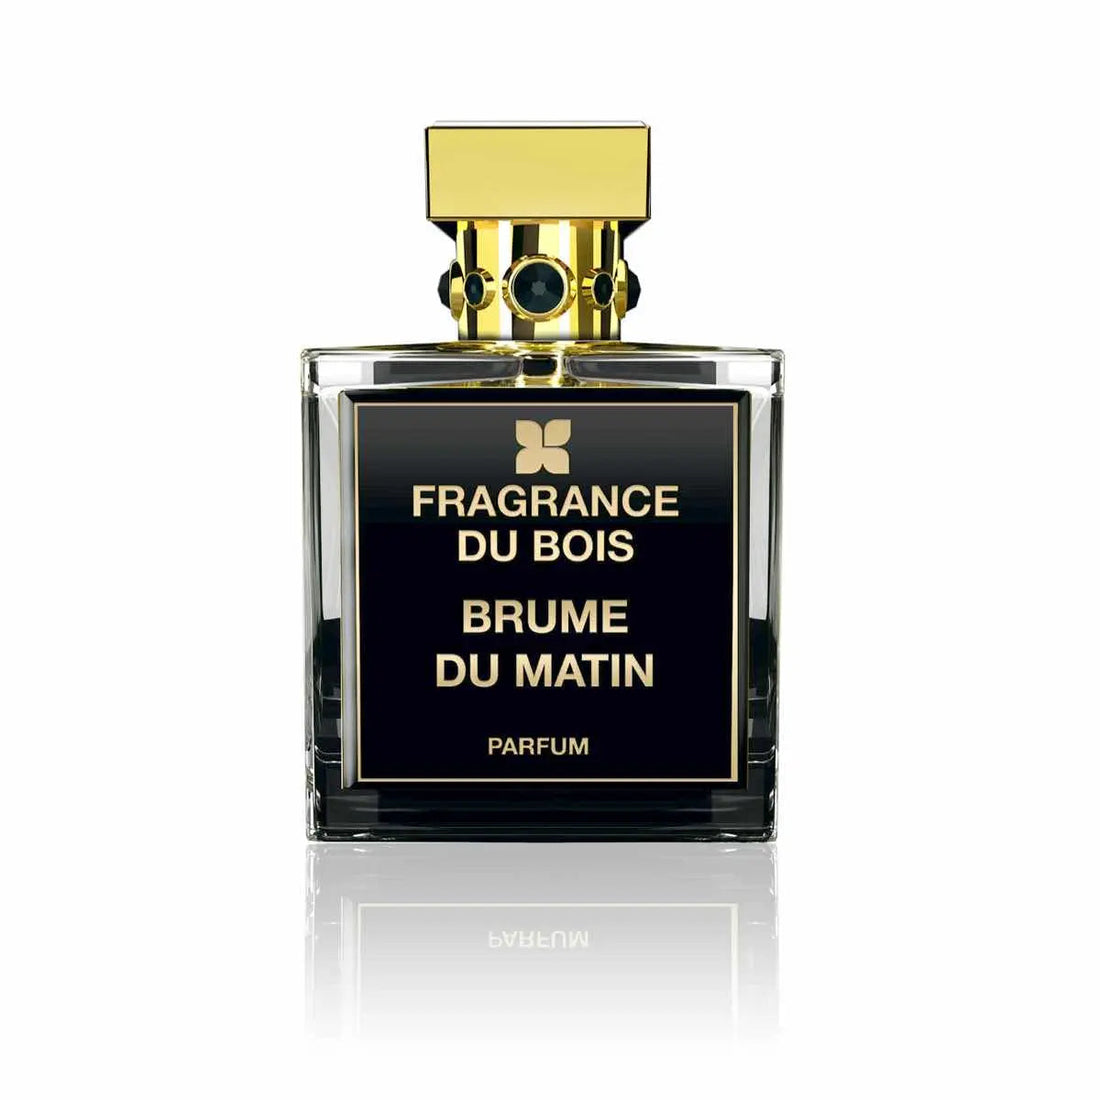 Fragrance du bois Brume du Matin profumo - 100 ml